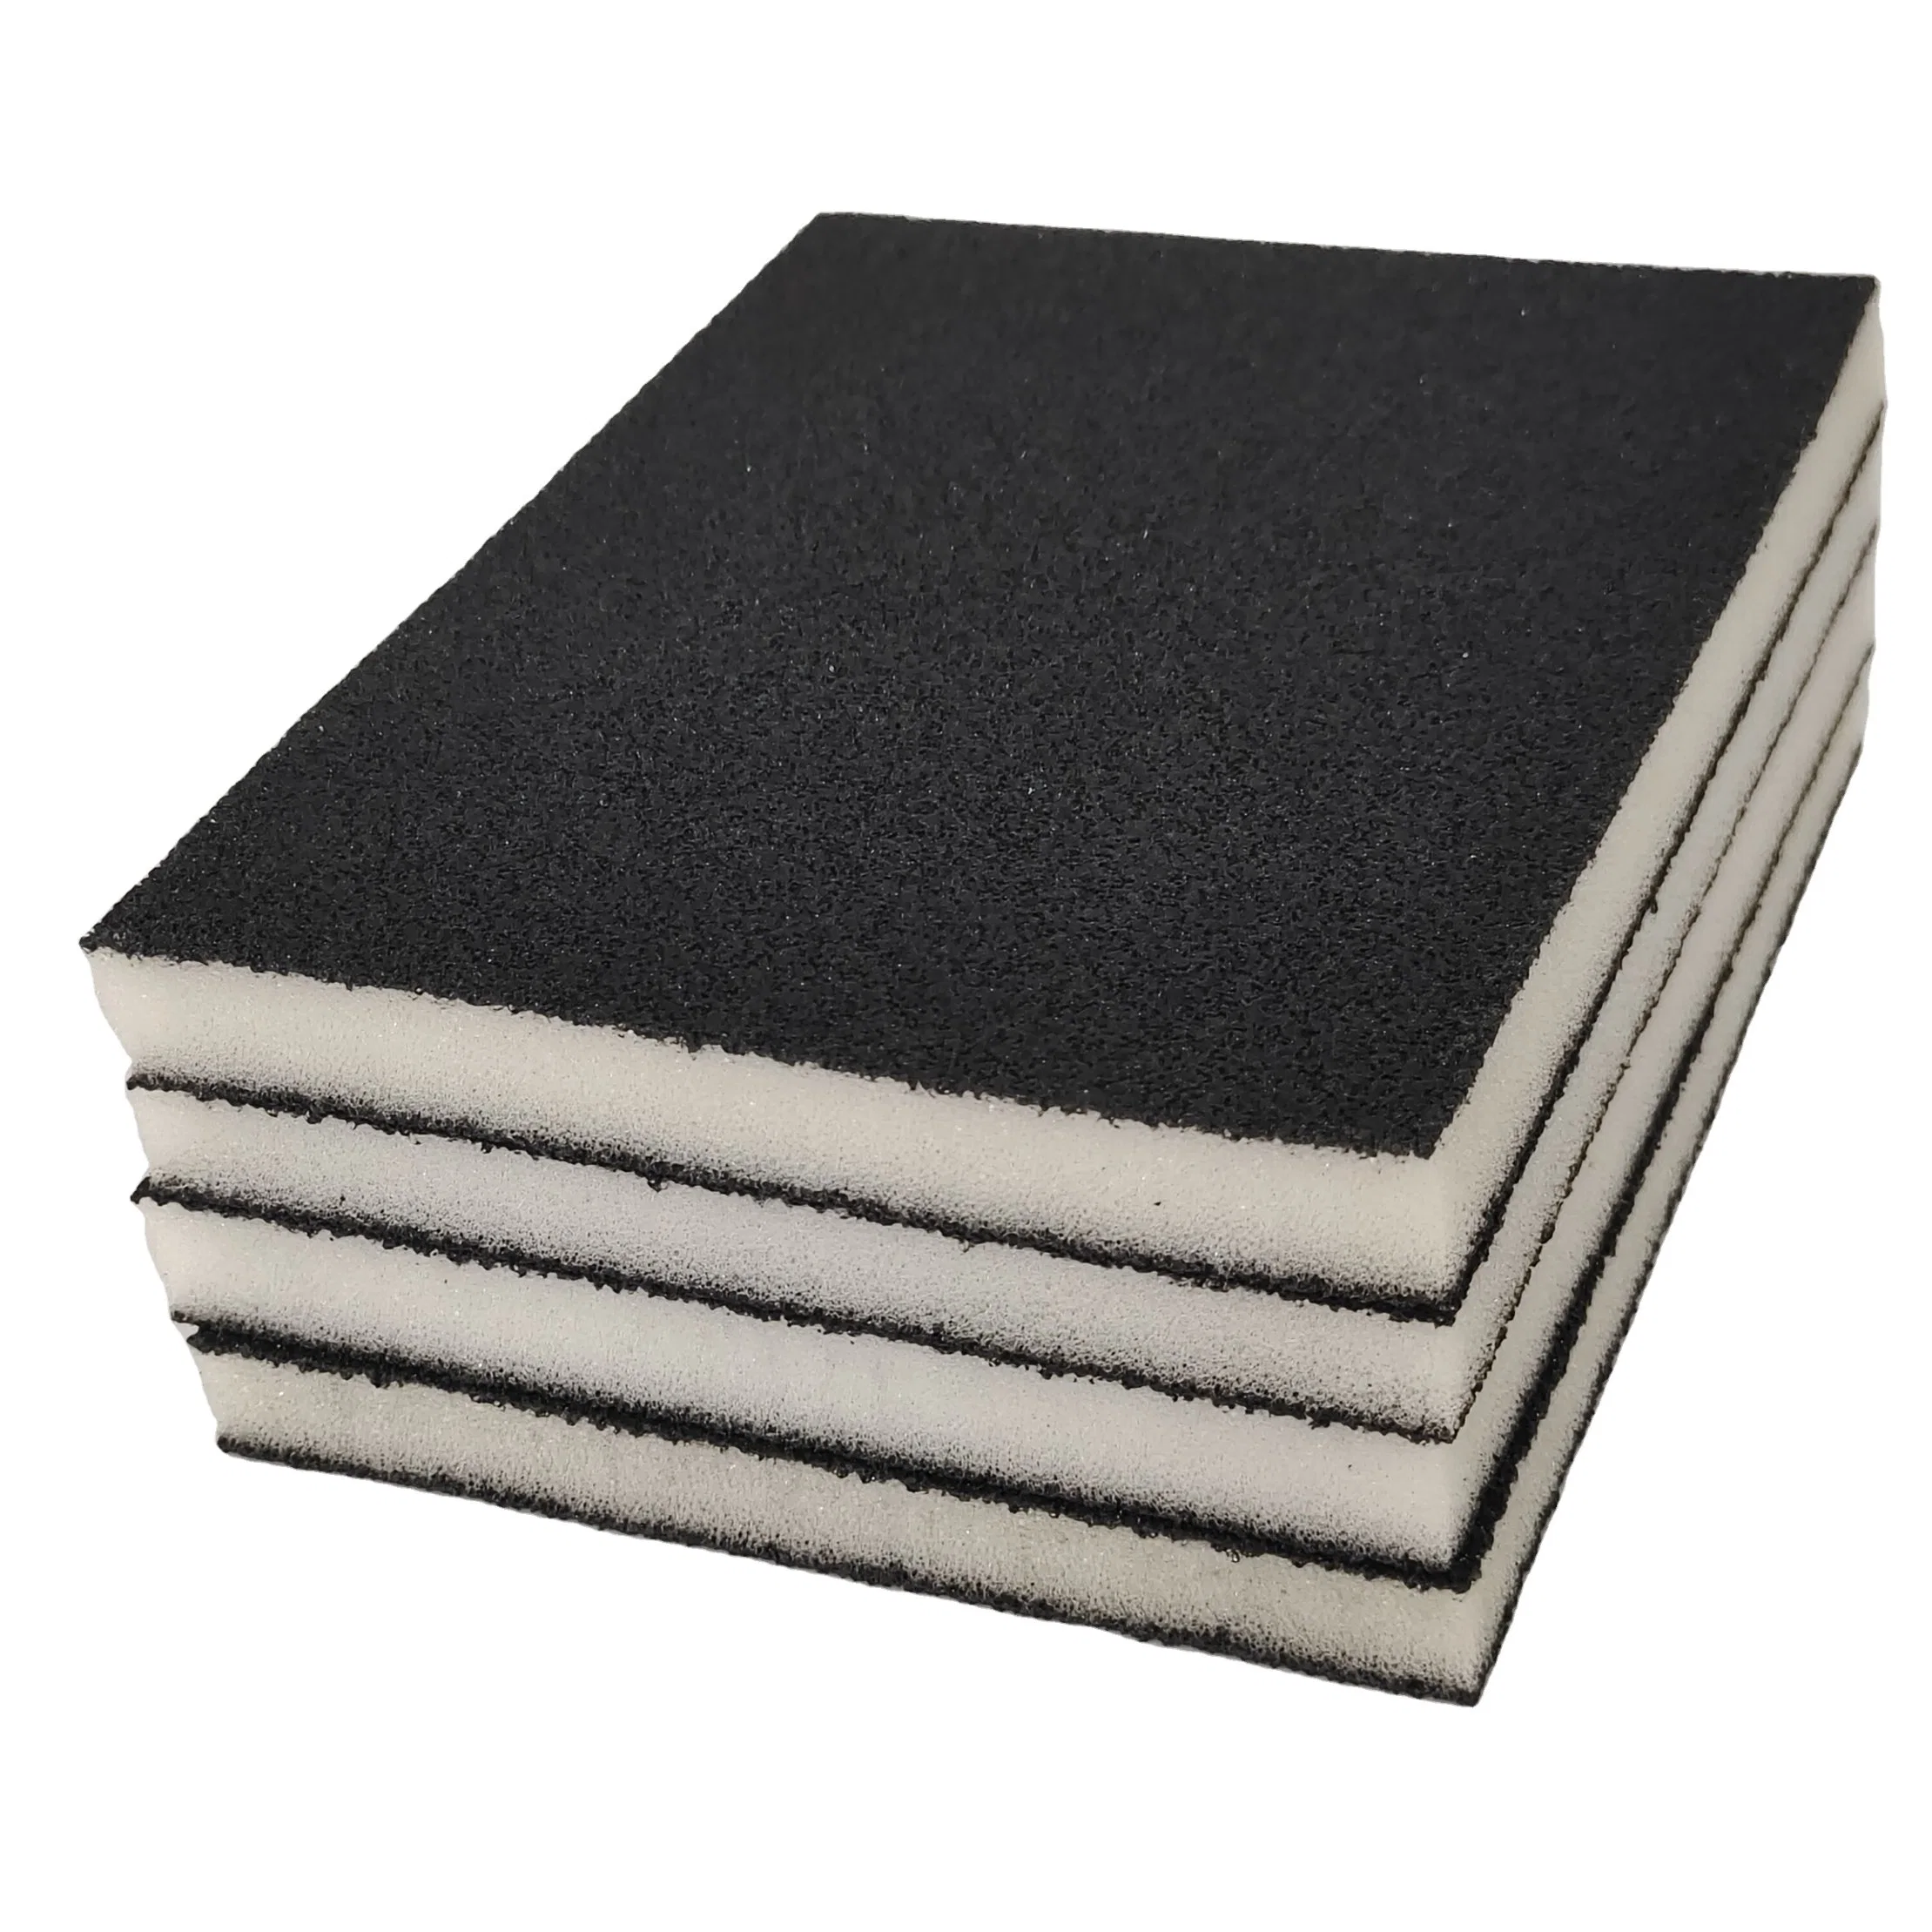 Abrasive 125*100*12mm Wet & Dry Sandpaper Drywall Two-Sided Sanding Sponge Polishing Block